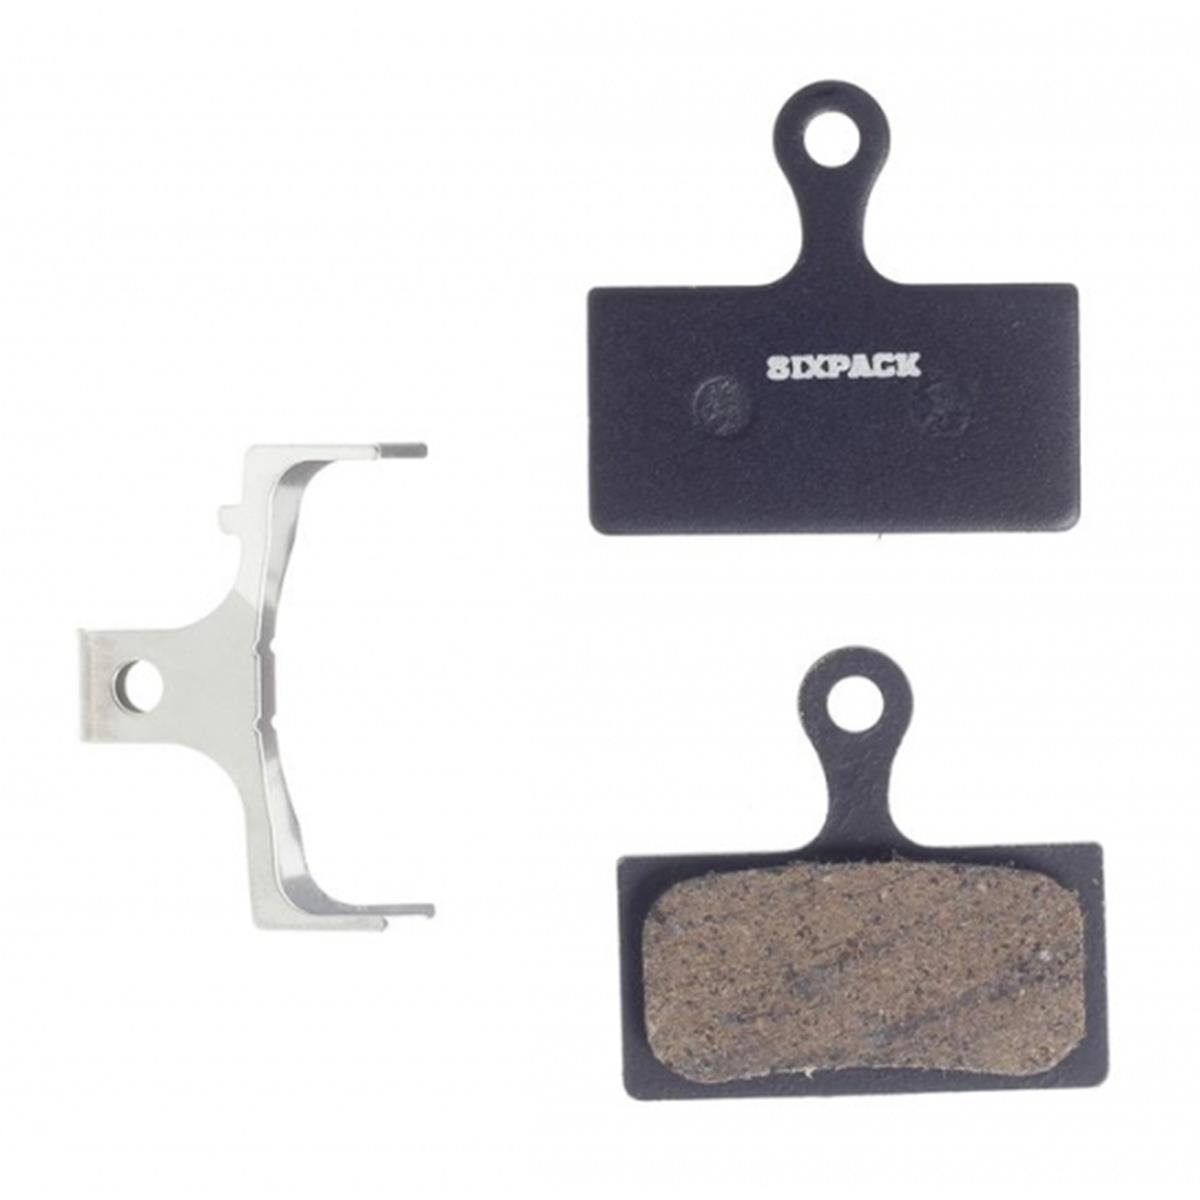 Sixpack Plaquettes VTT Shimano Semi Metallique, pour Shimano XTR,/XT/SLX (IcetechR compatible)